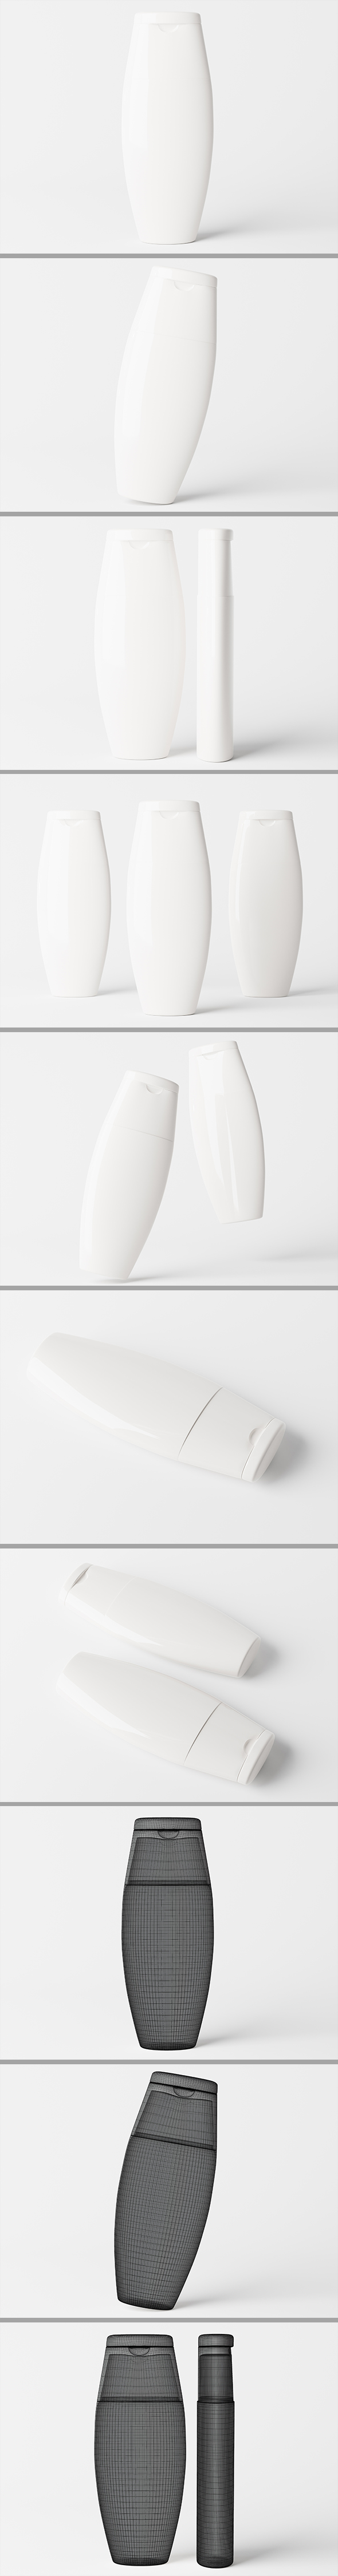 Cosmetic packaging Flip Top Cap Shampoo bottle 3D model